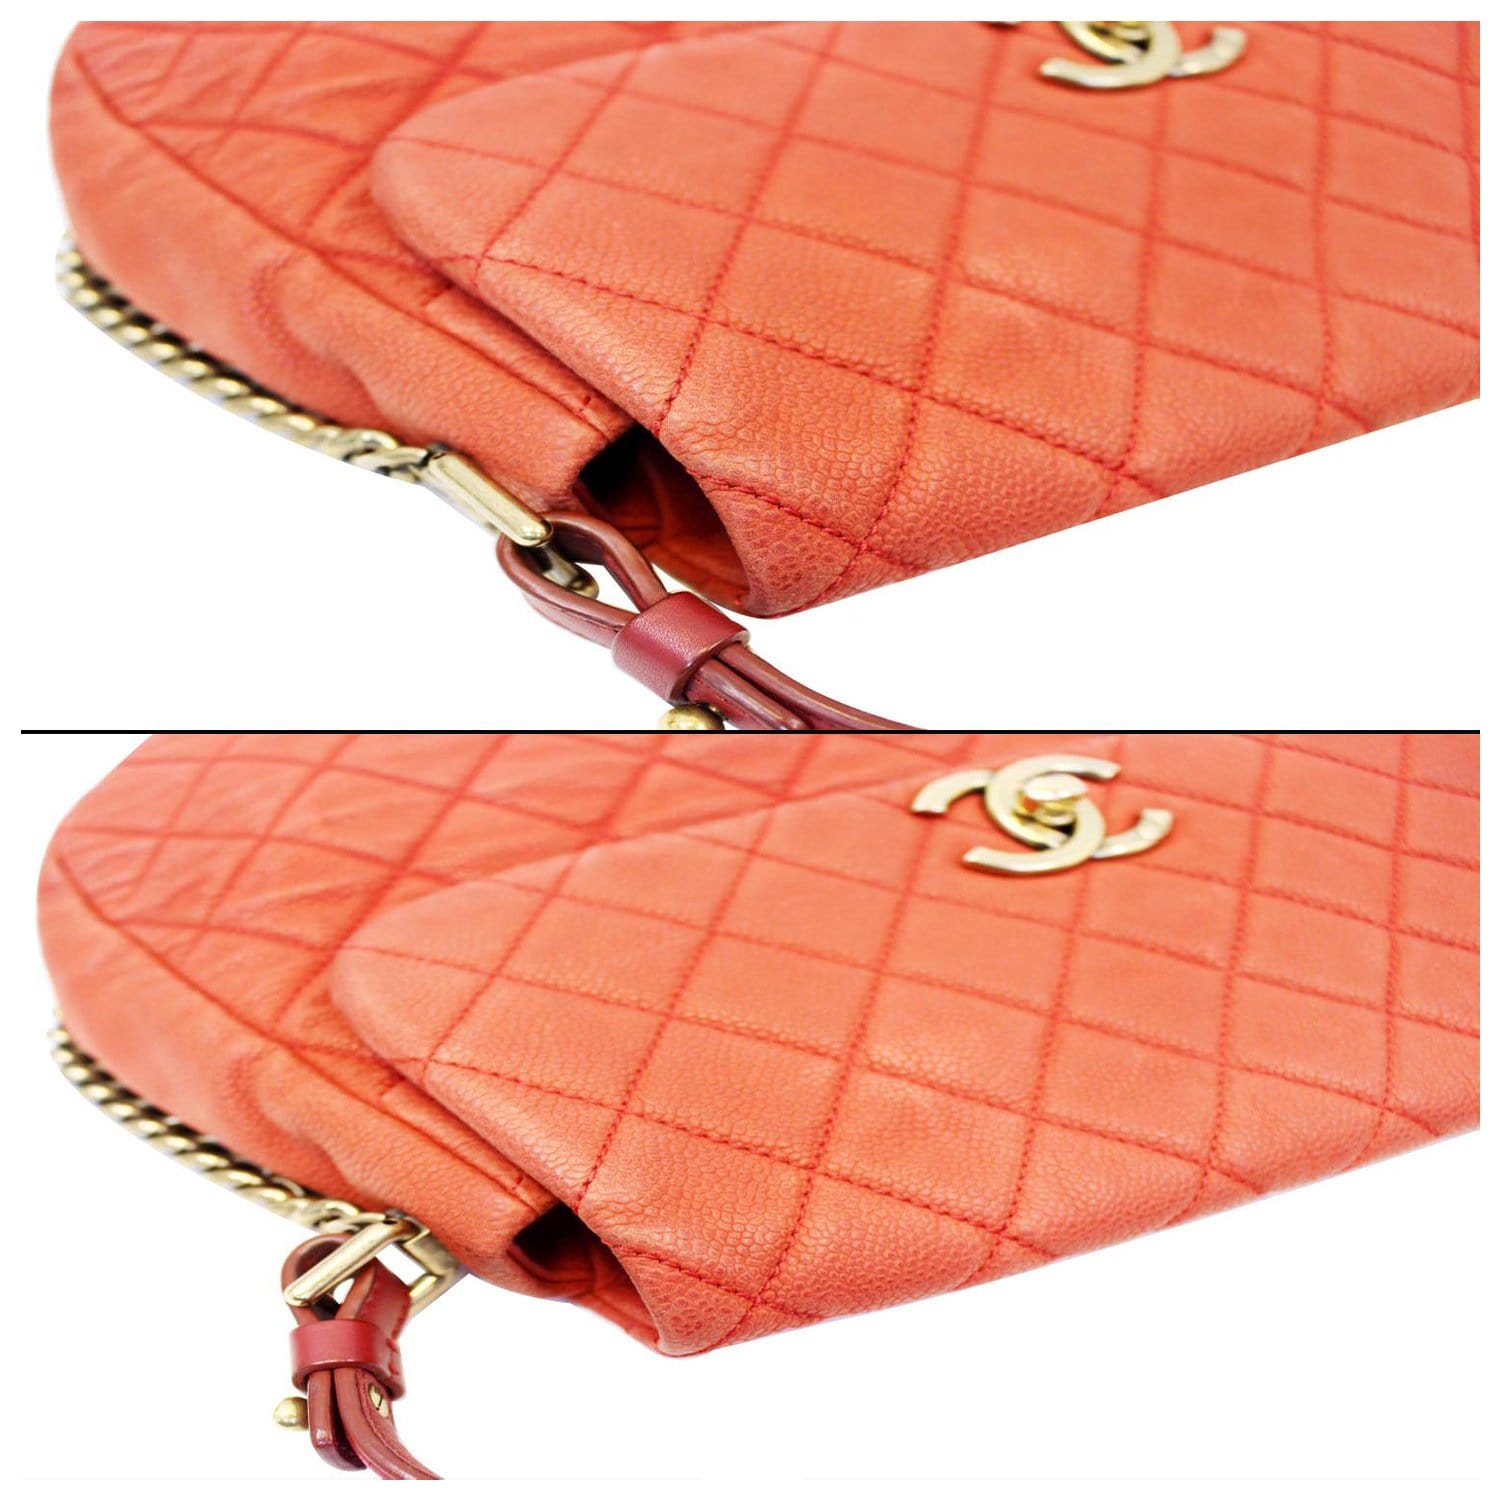 Luxury Goods - Handbags - The Happy Coin